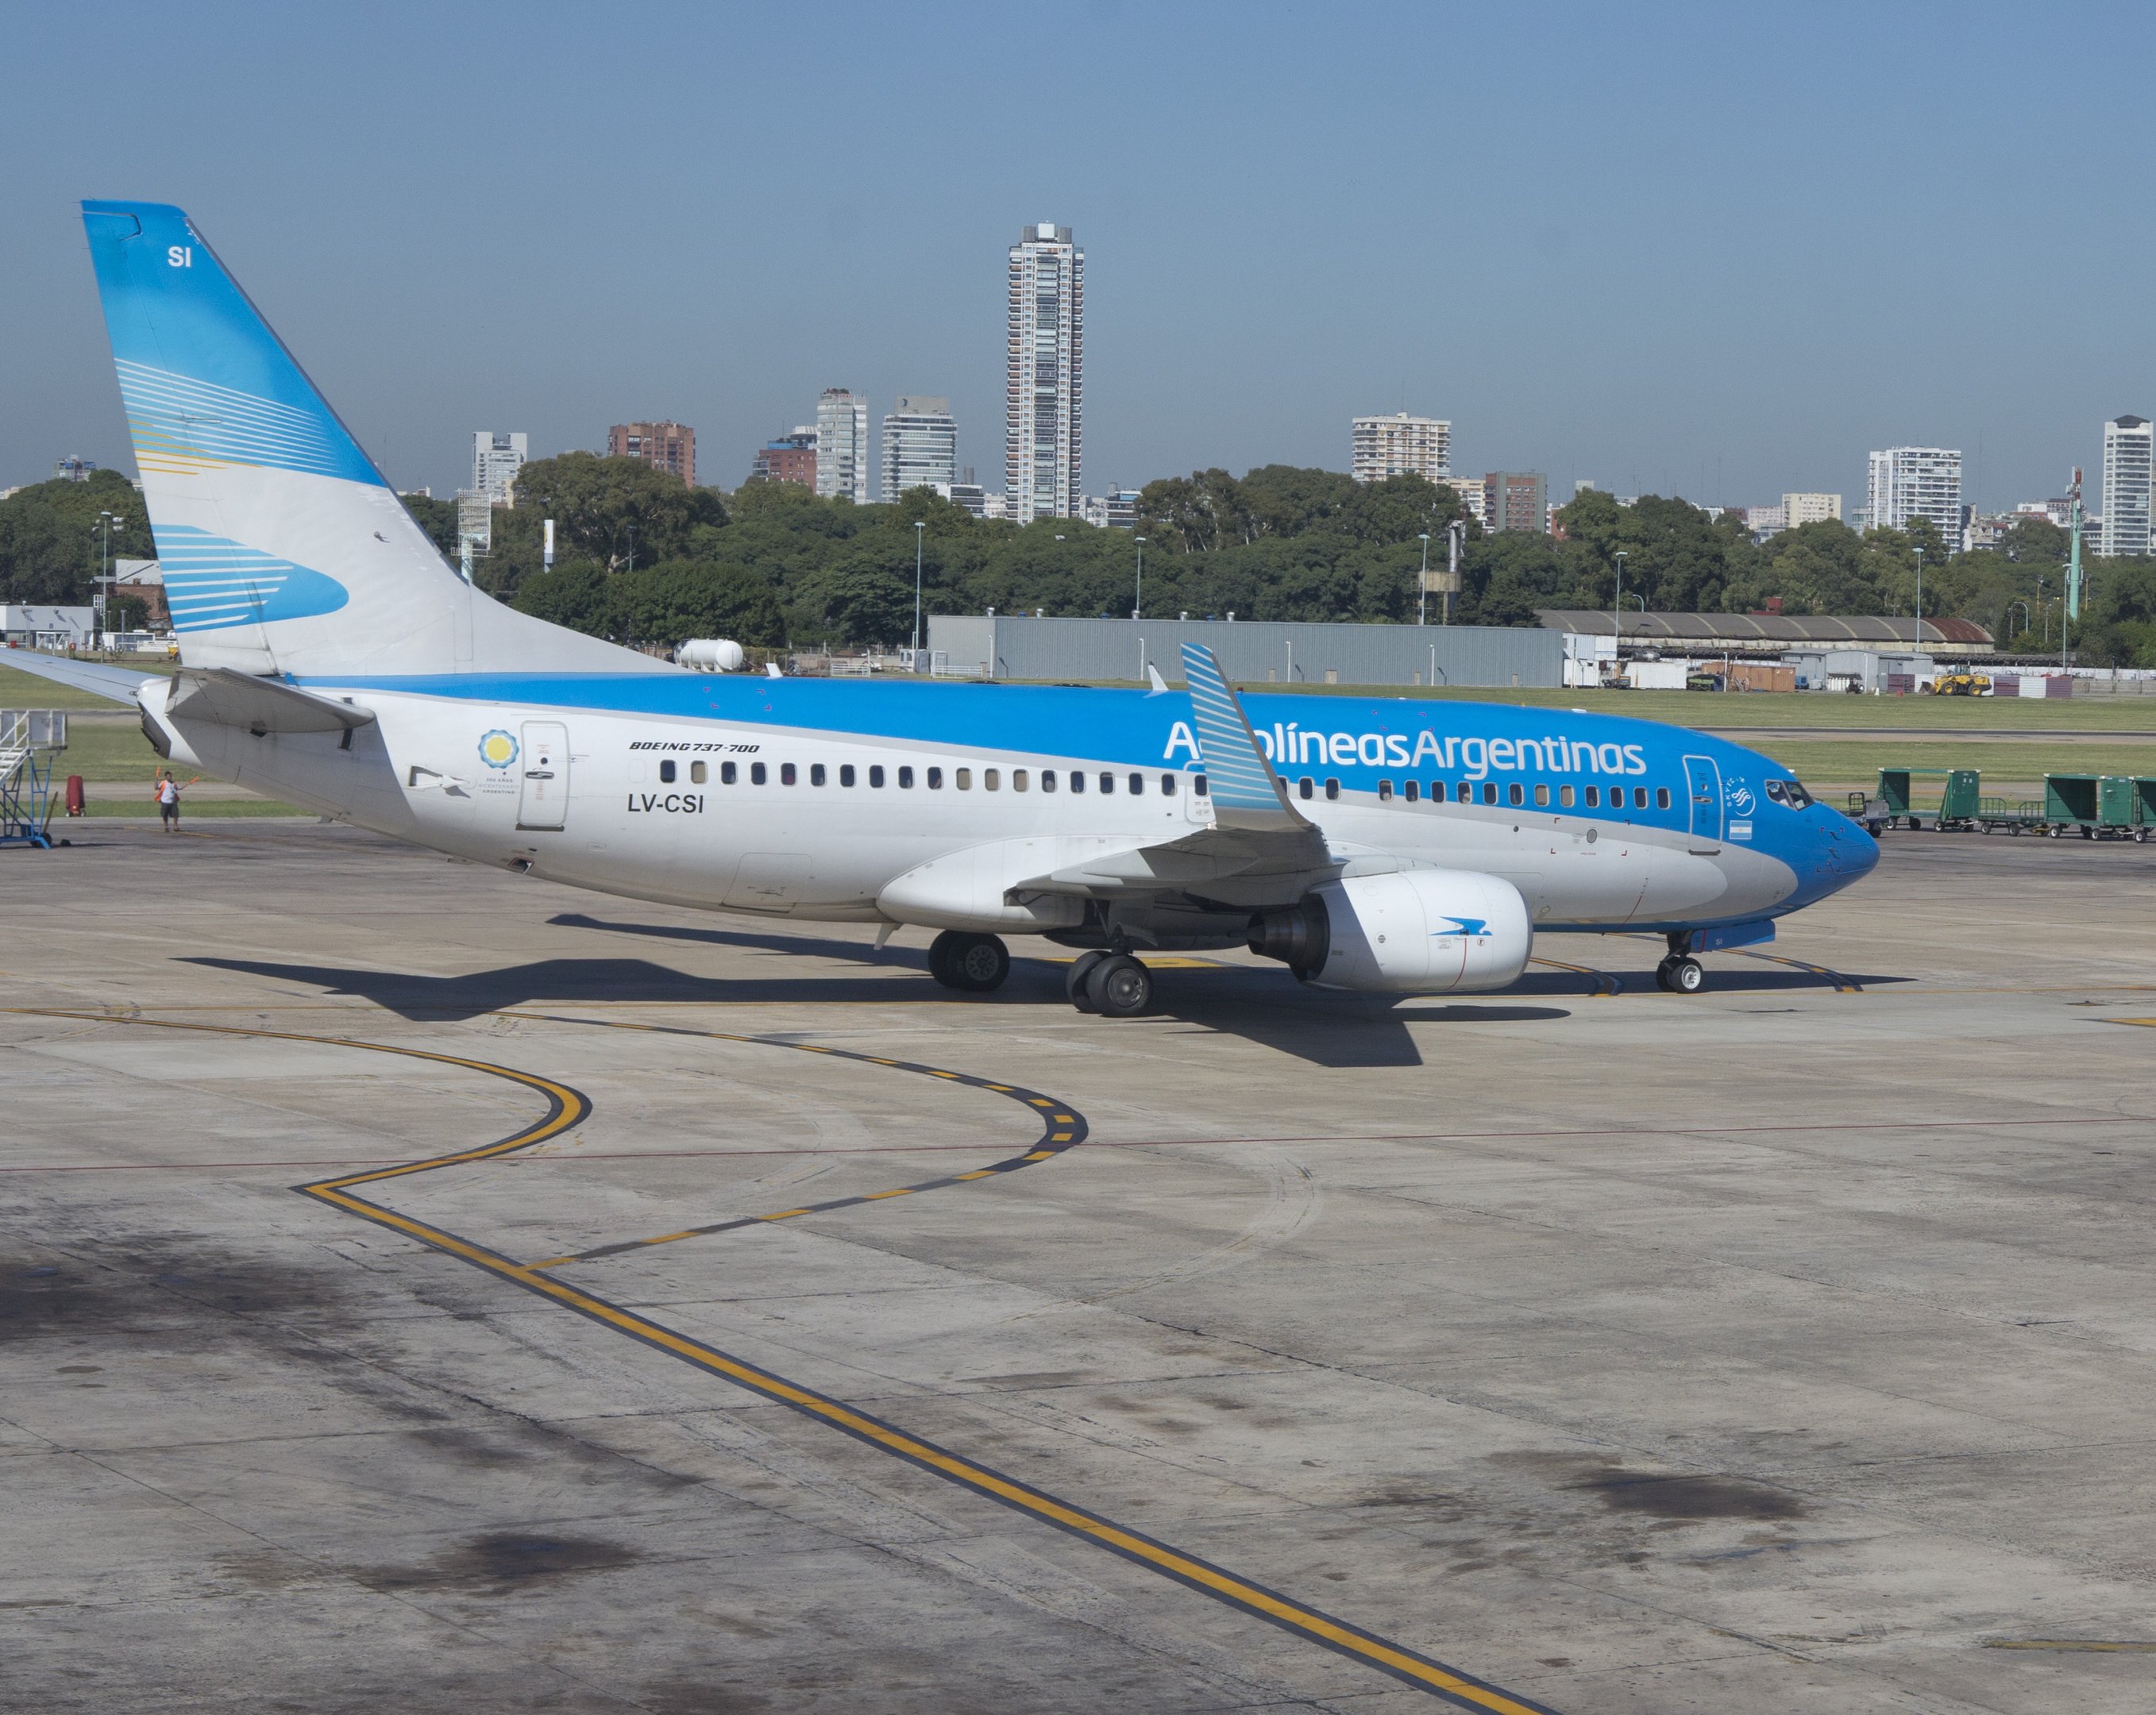 Empresa aérea exige passagem de volta a brasileiros que viajarem à Argentina